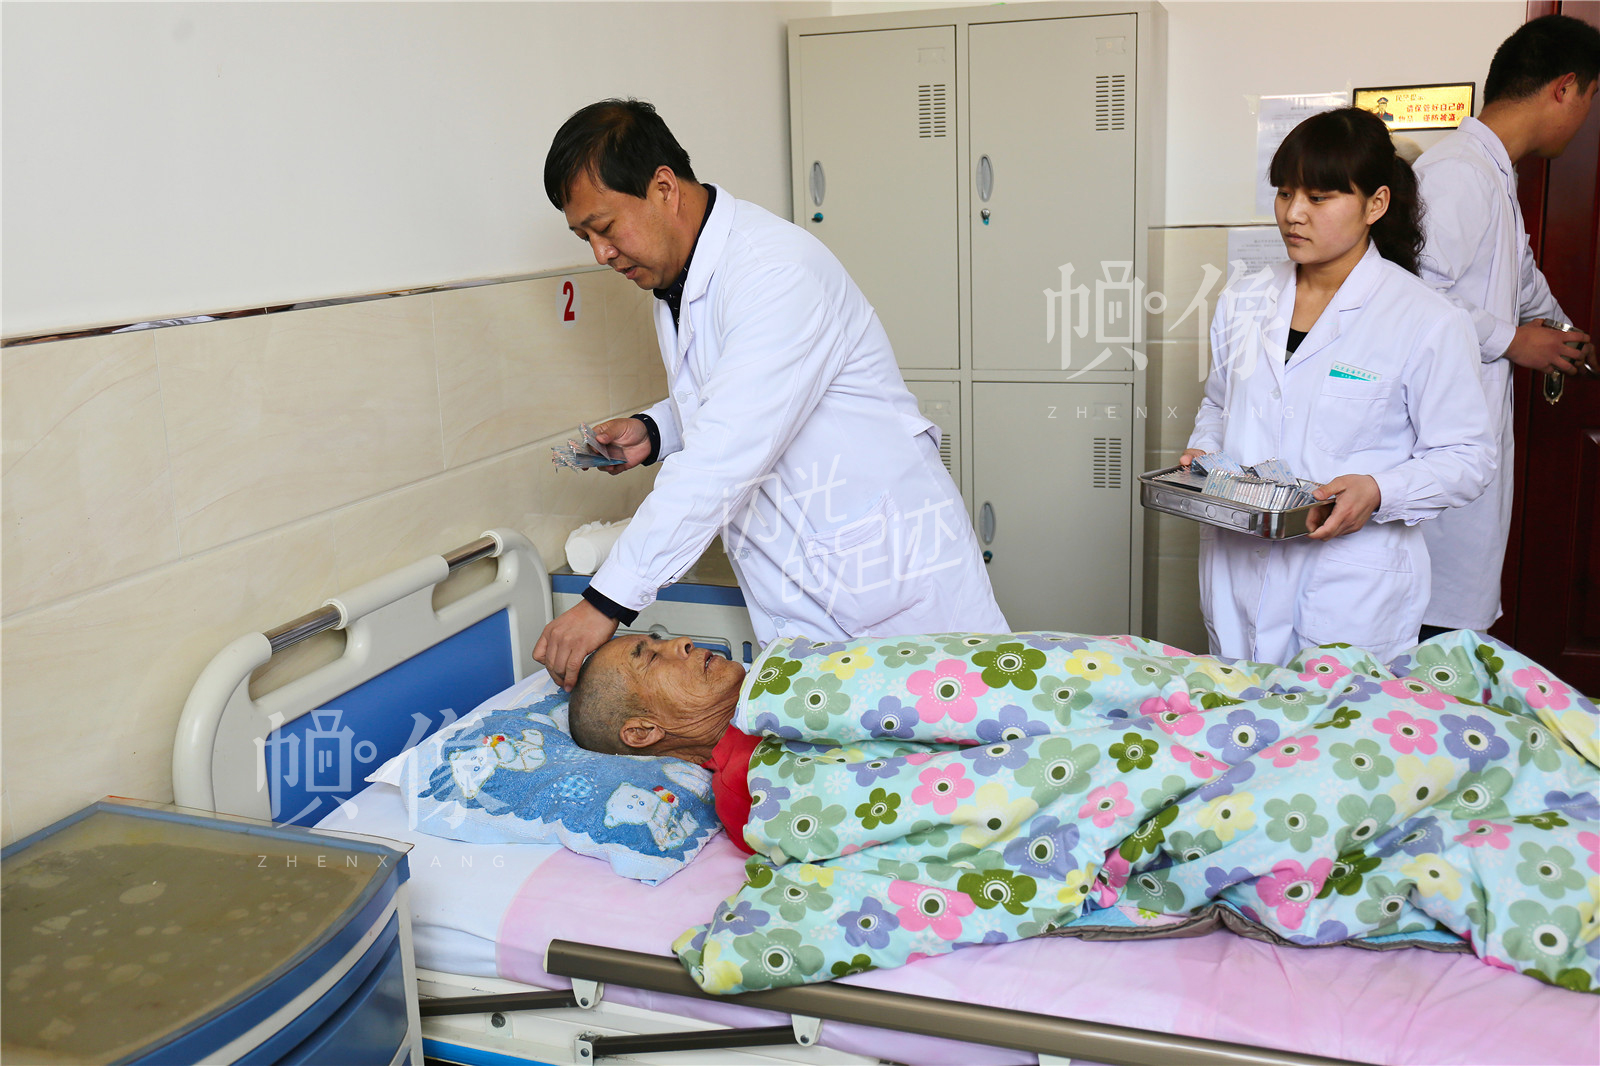 “医养结合”是张坊镇金海养老中心的特色内容，王金海每天上午例行查房后都会为患者做针灸治疗。中国网记者 黄富友 摄